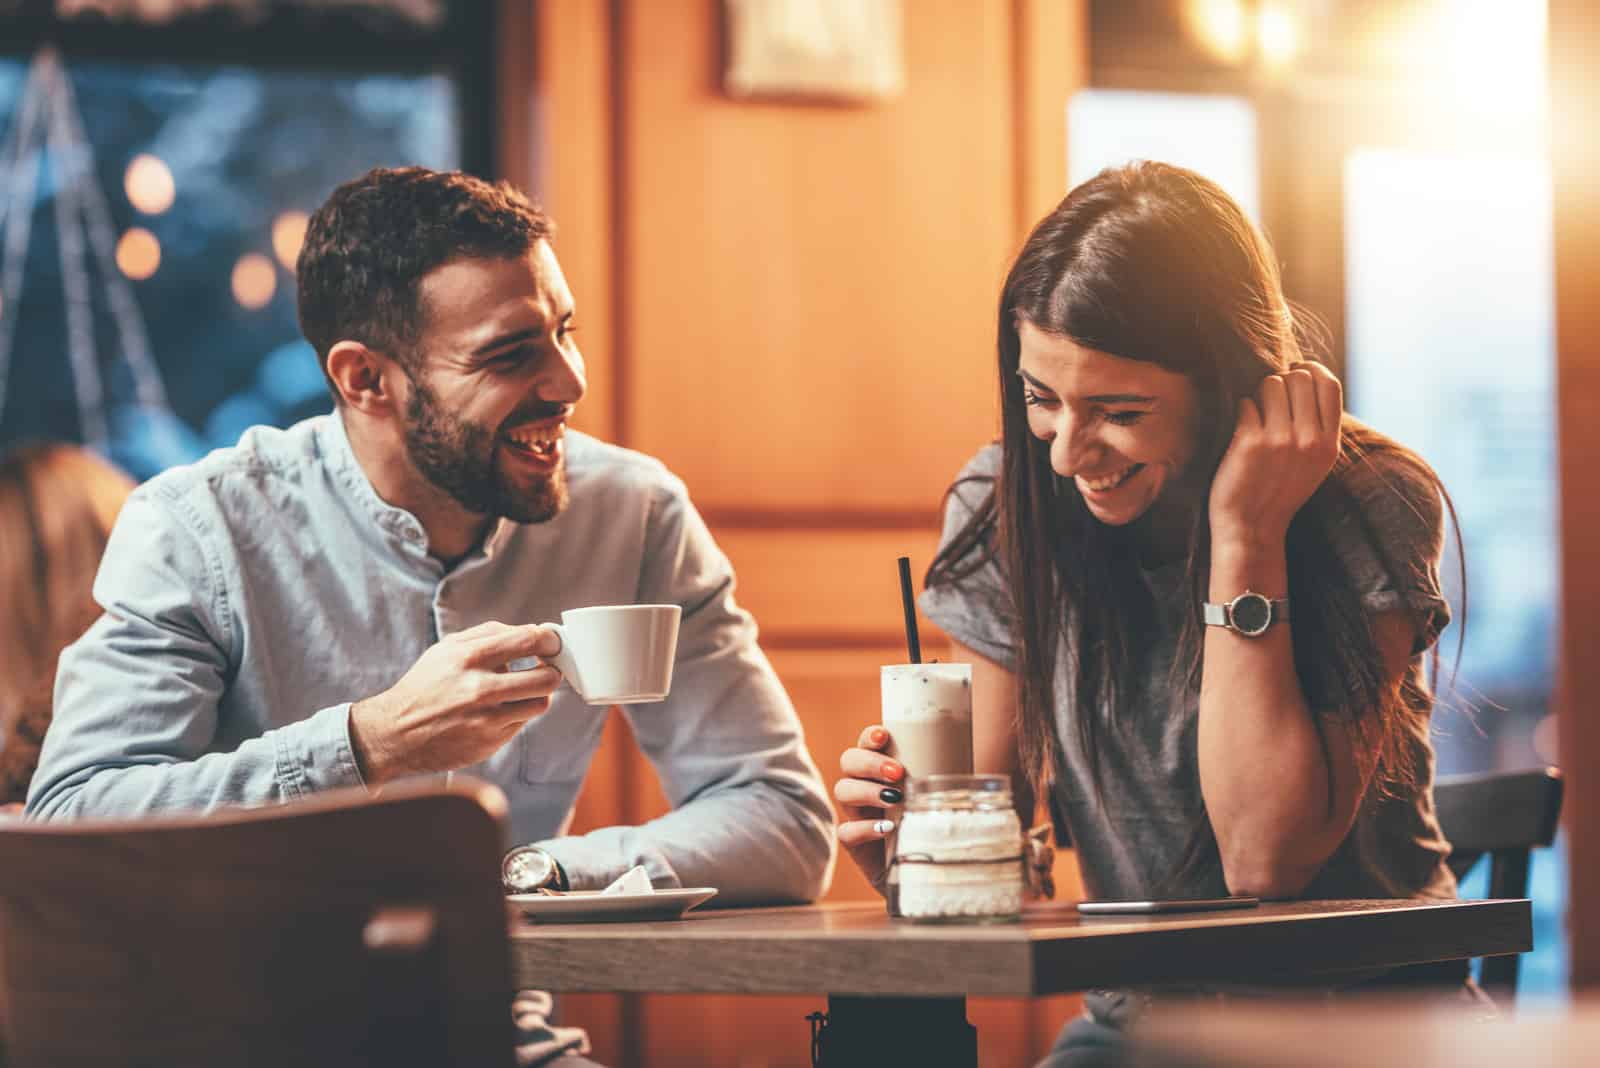 un homme et une femme souriants s'assoient à une table et parlent